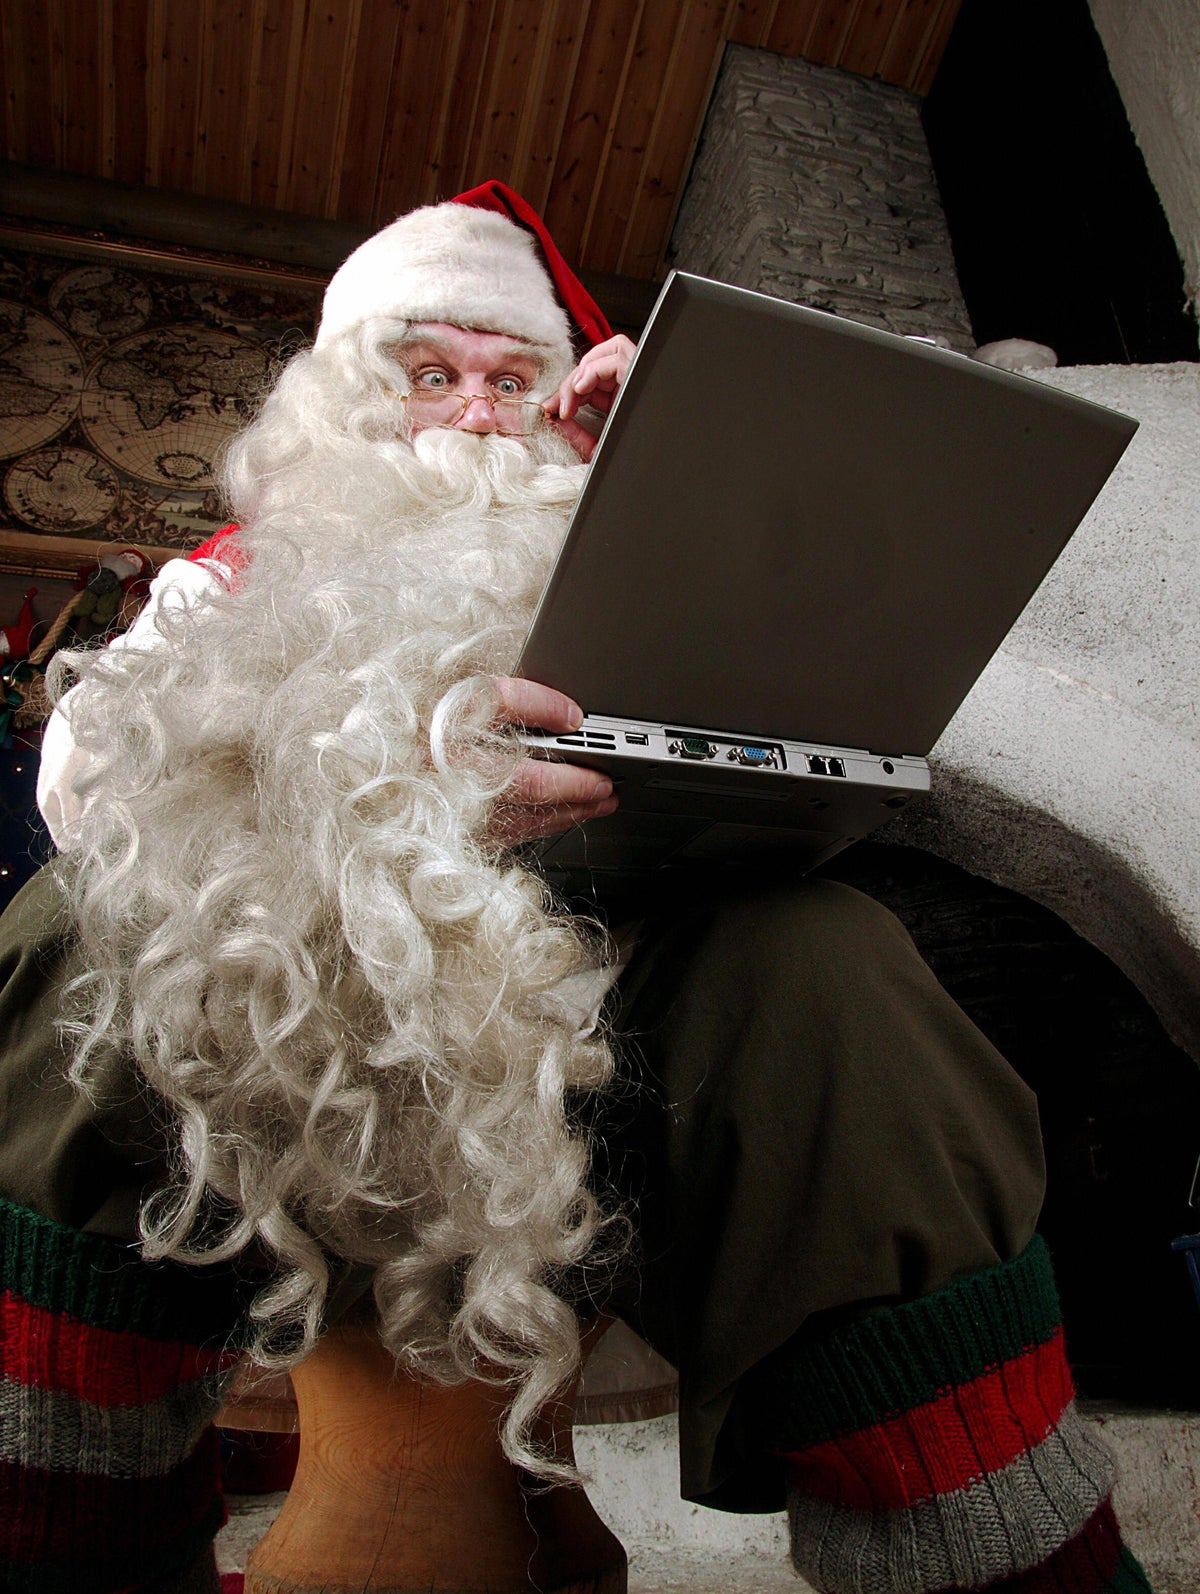 Emailing Santa Claus